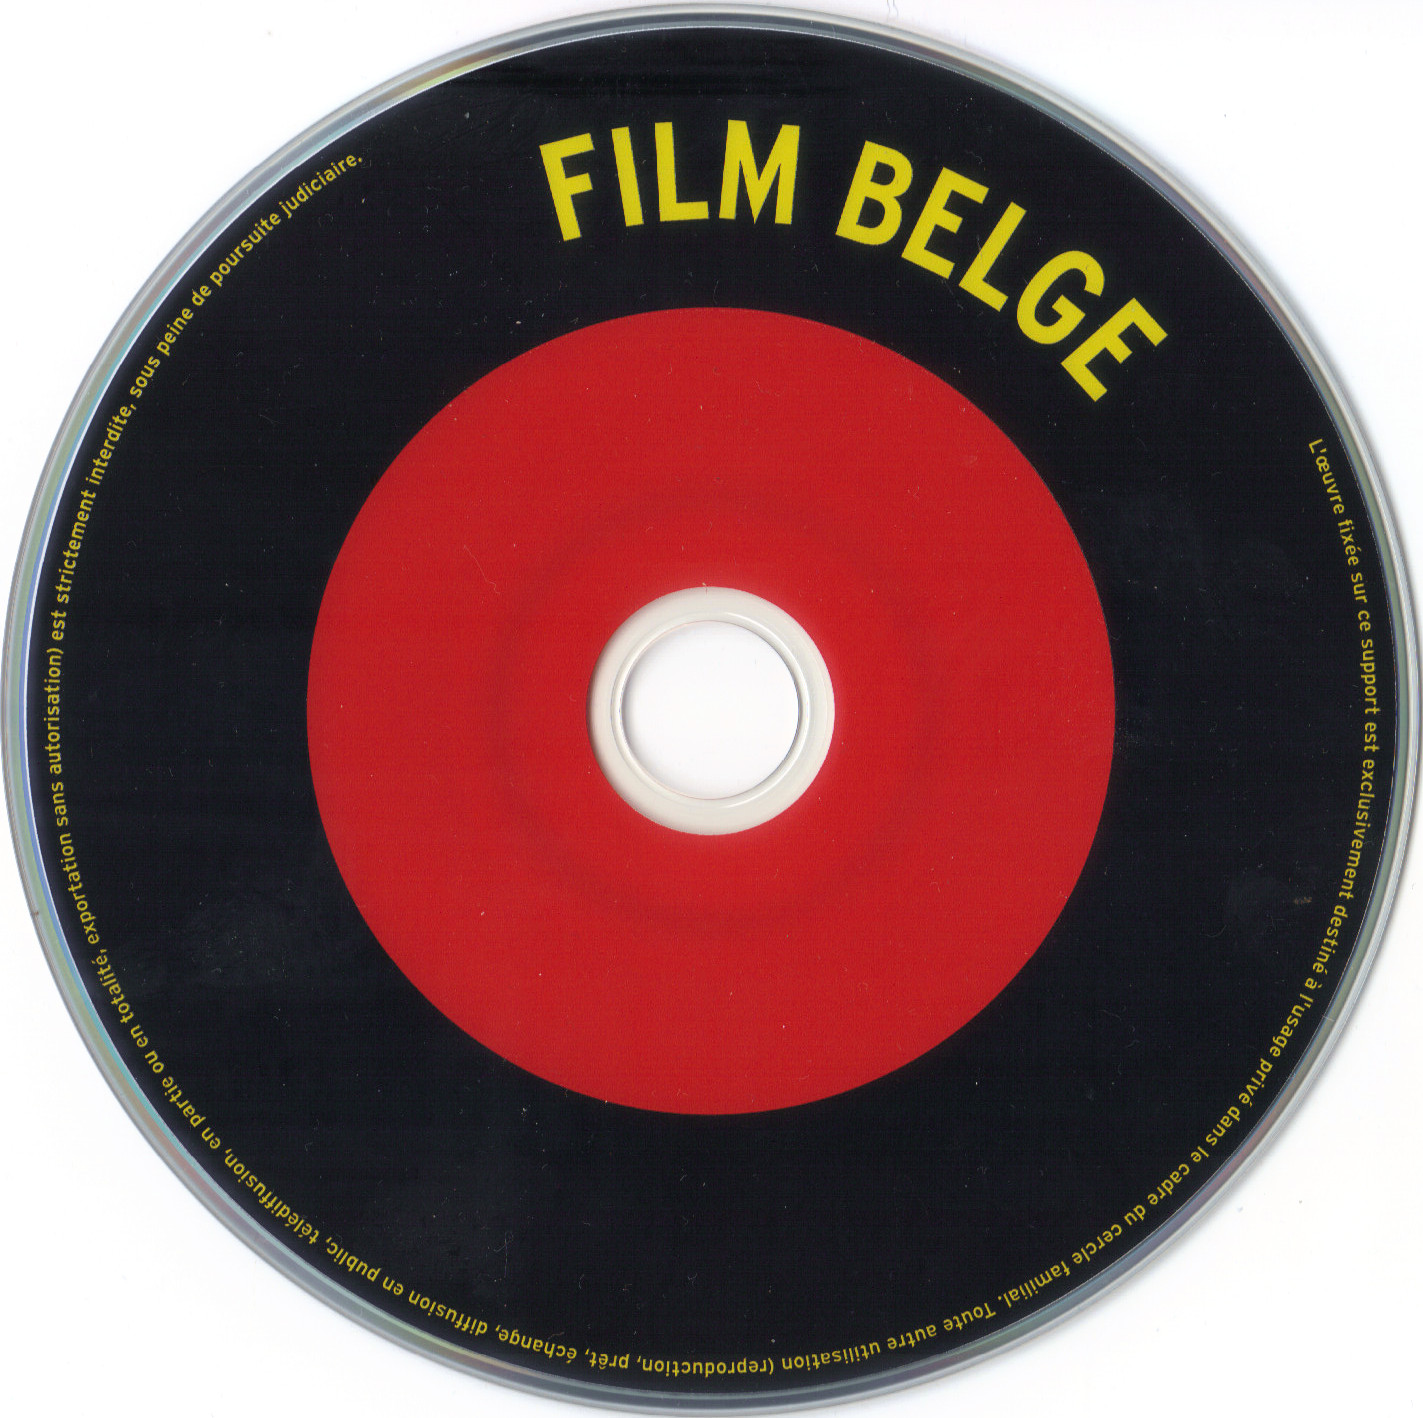 Film belge